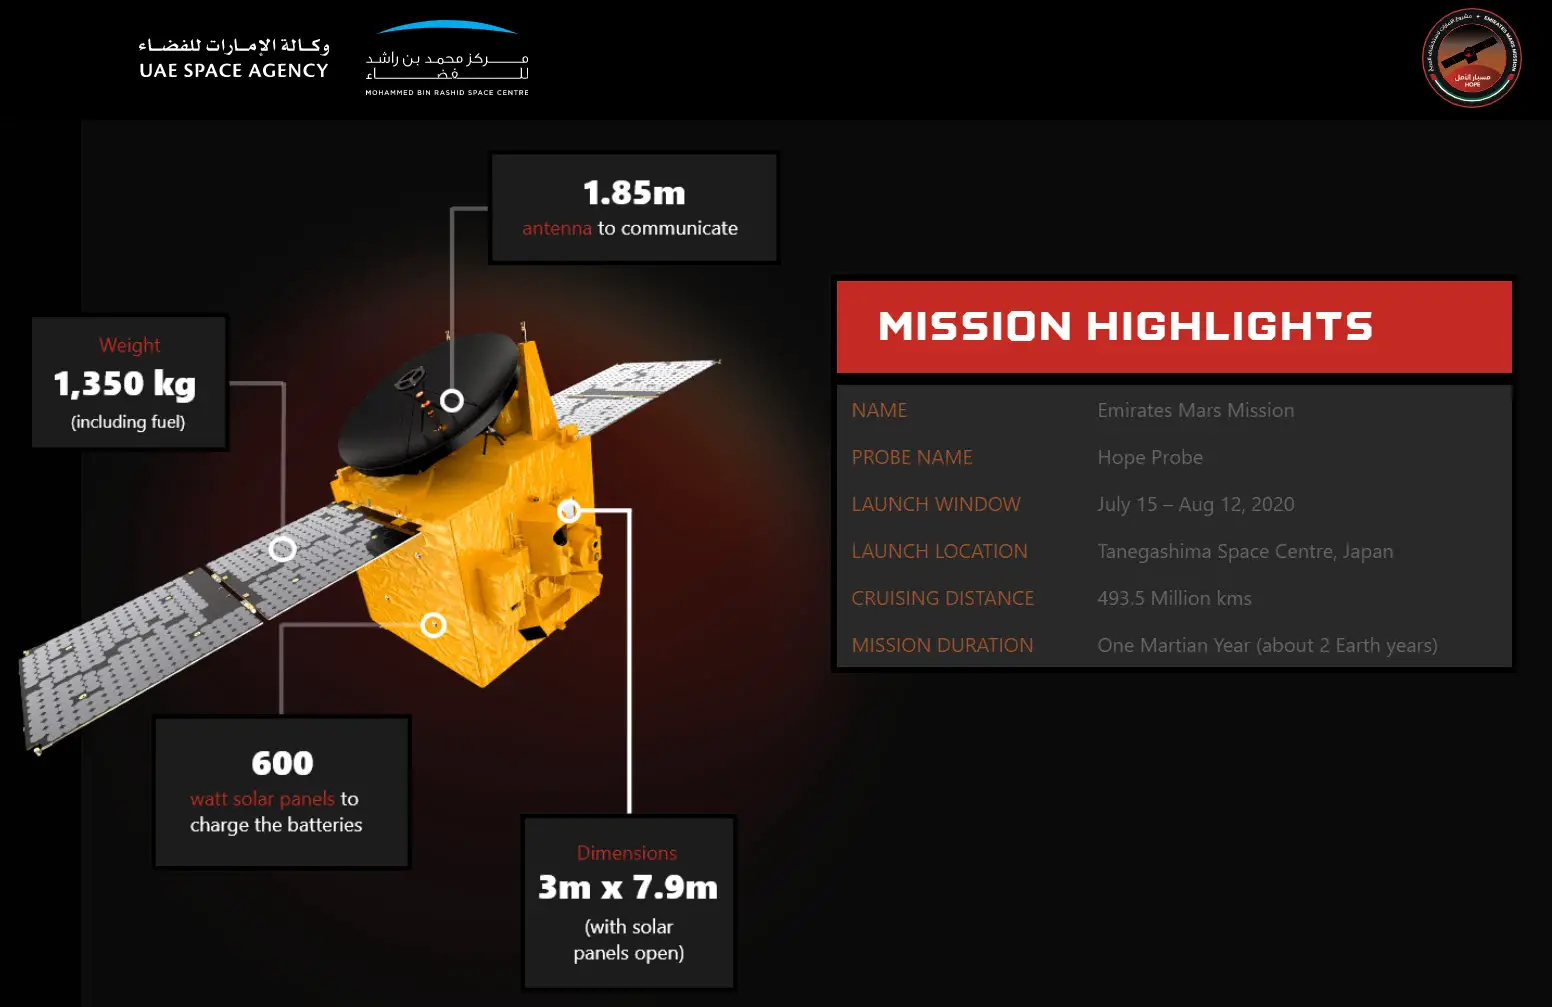 UAE MARS Mission-Emirates Mars Mission Hope Probe